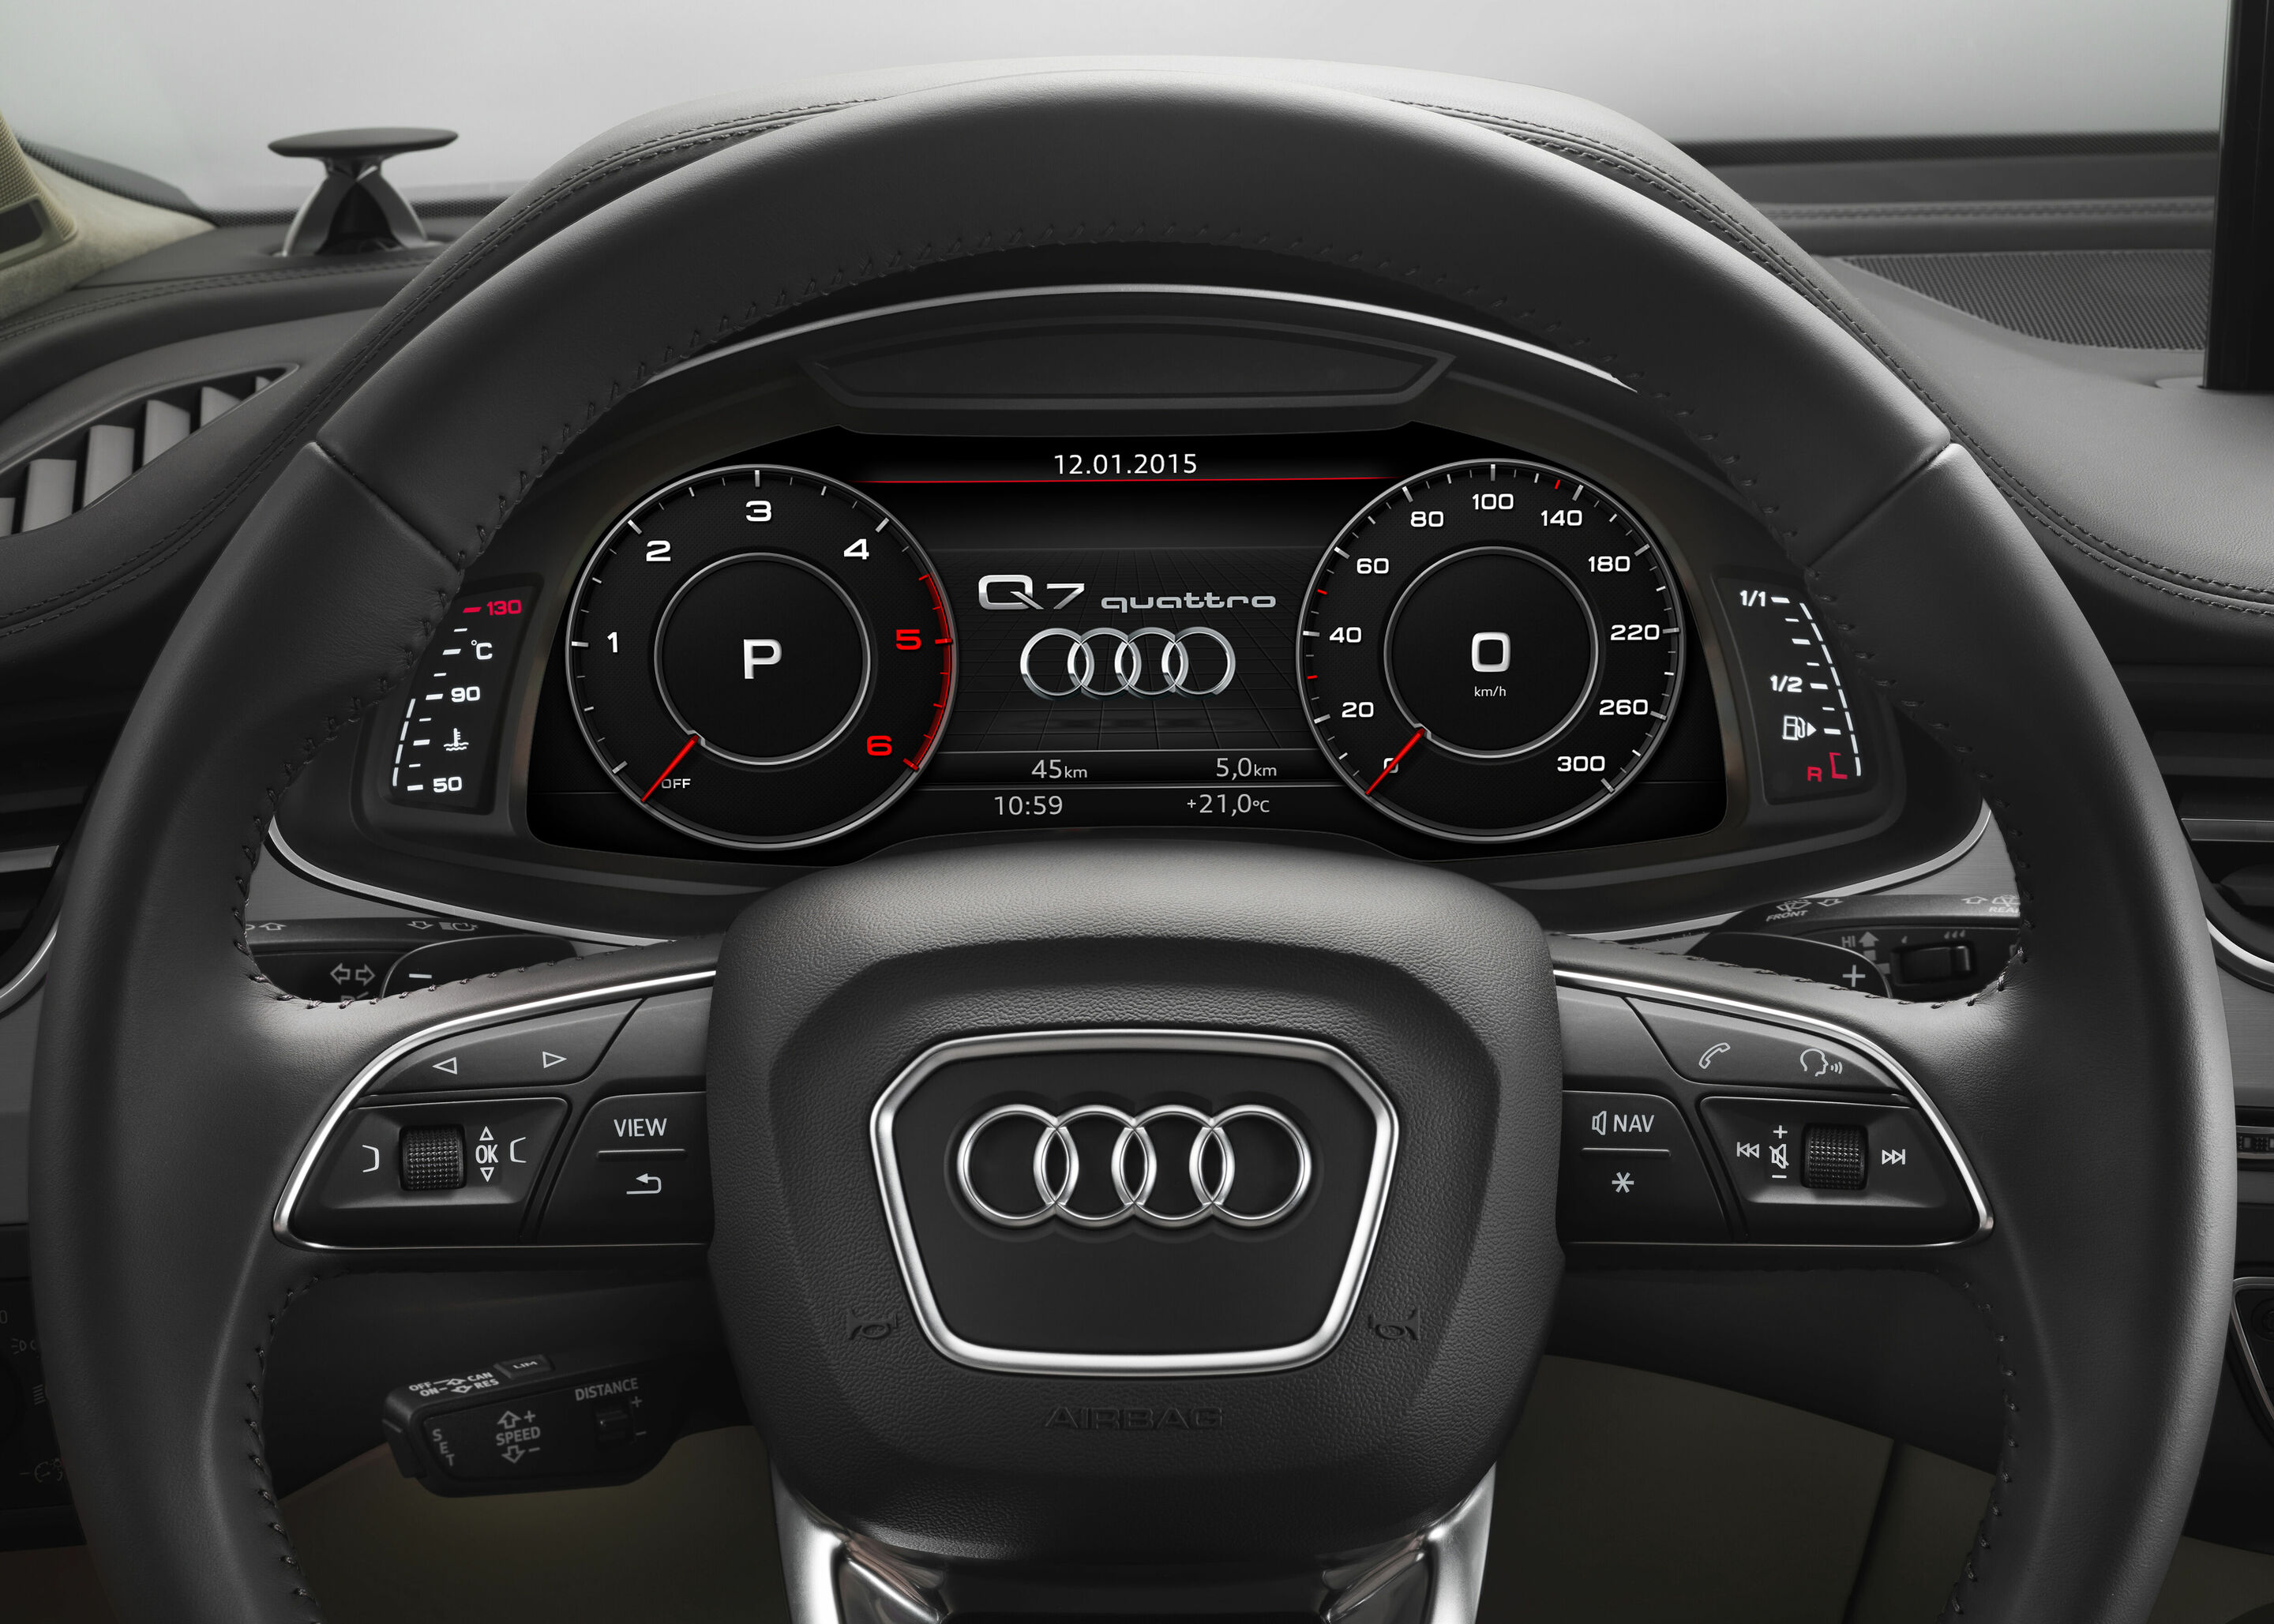 The new Audi Q7